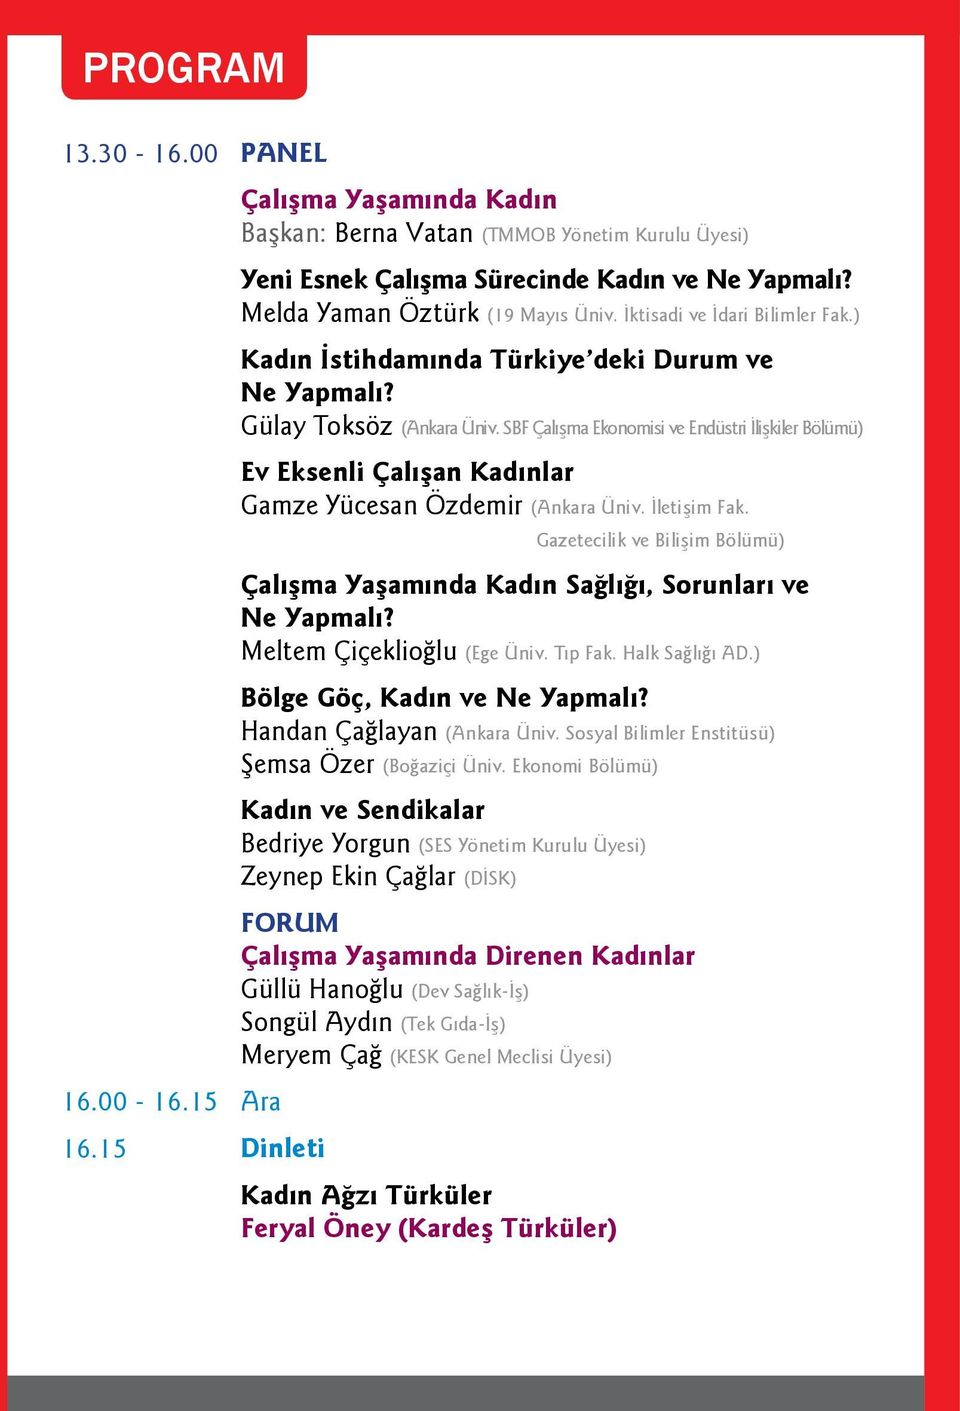 SBF Çalışma Ekonomisi ve Endüstri İlişkiler Bölümü) Ev Eksenli Çalışan Kadınlar Gamze Yücesan Özdemir (Ankara Üniv. İletişim Fak.